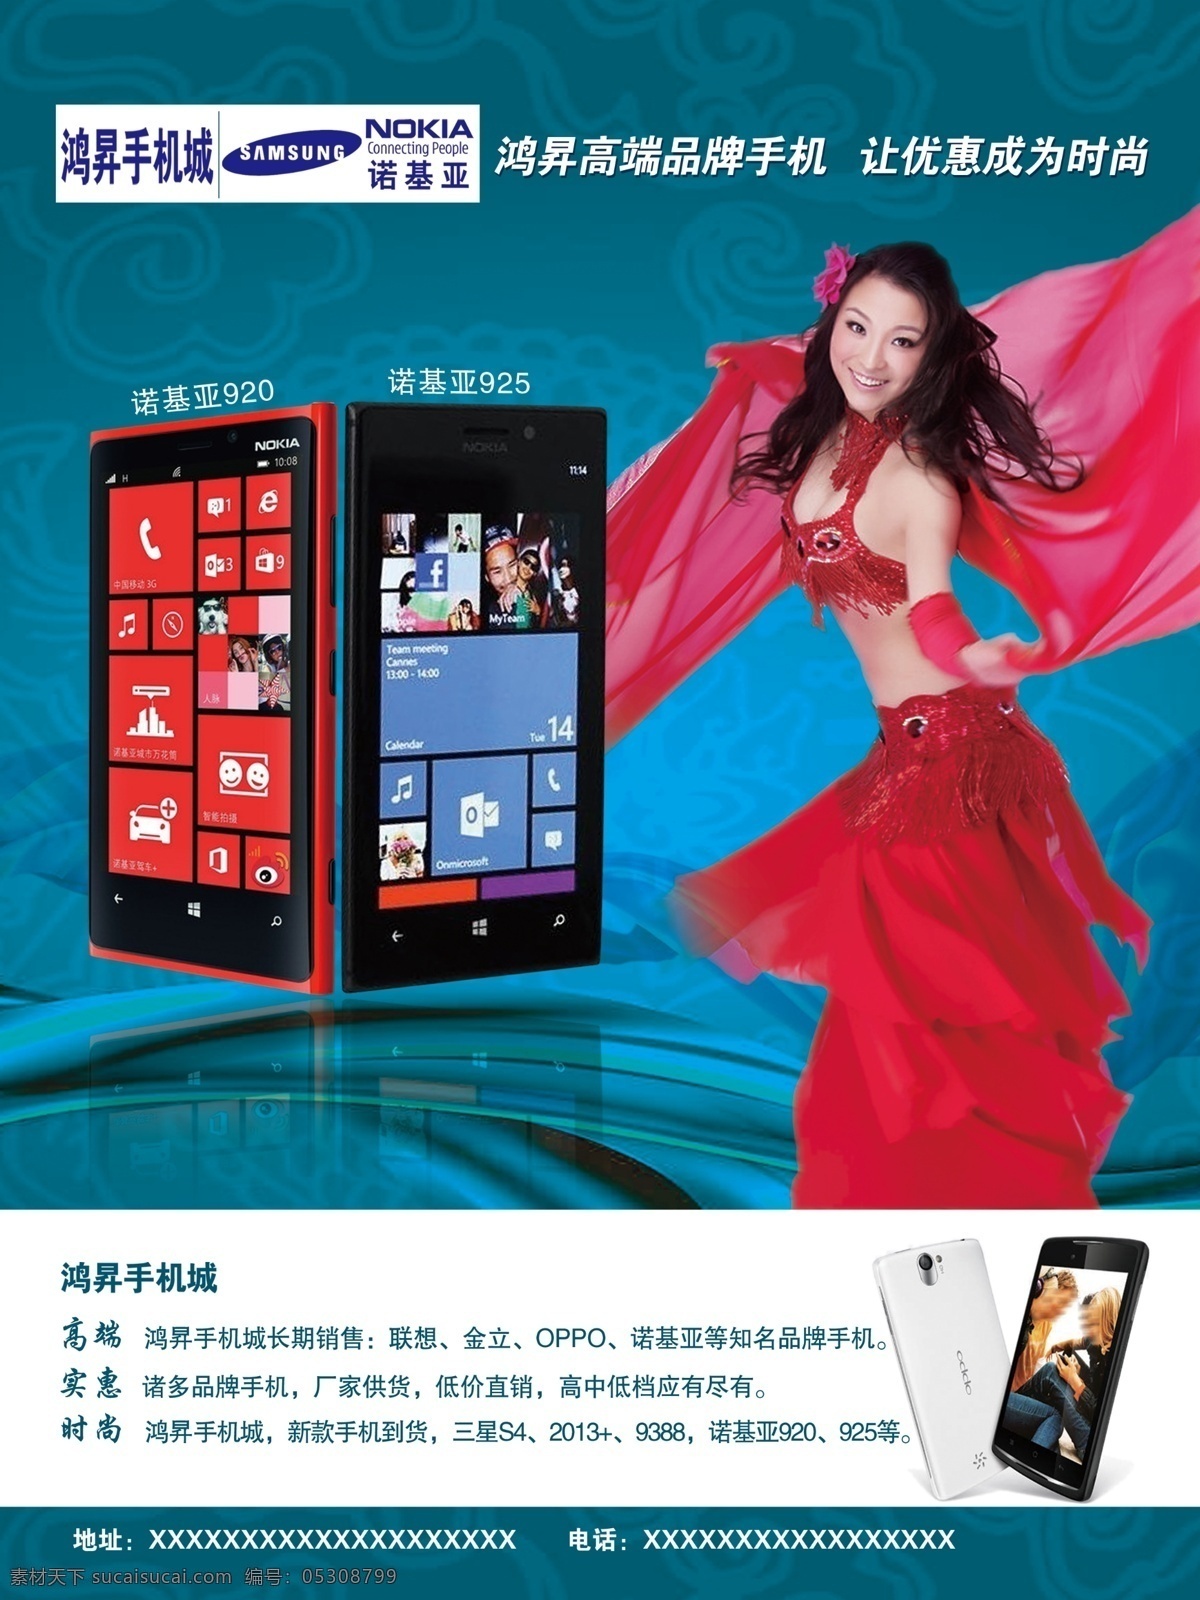 手机宣传 手机 诺基亚 三星 诺基亚920 诺基亚925 手机dm 手机海报 跳舞 美女 红衣 广告设计模板 源文件